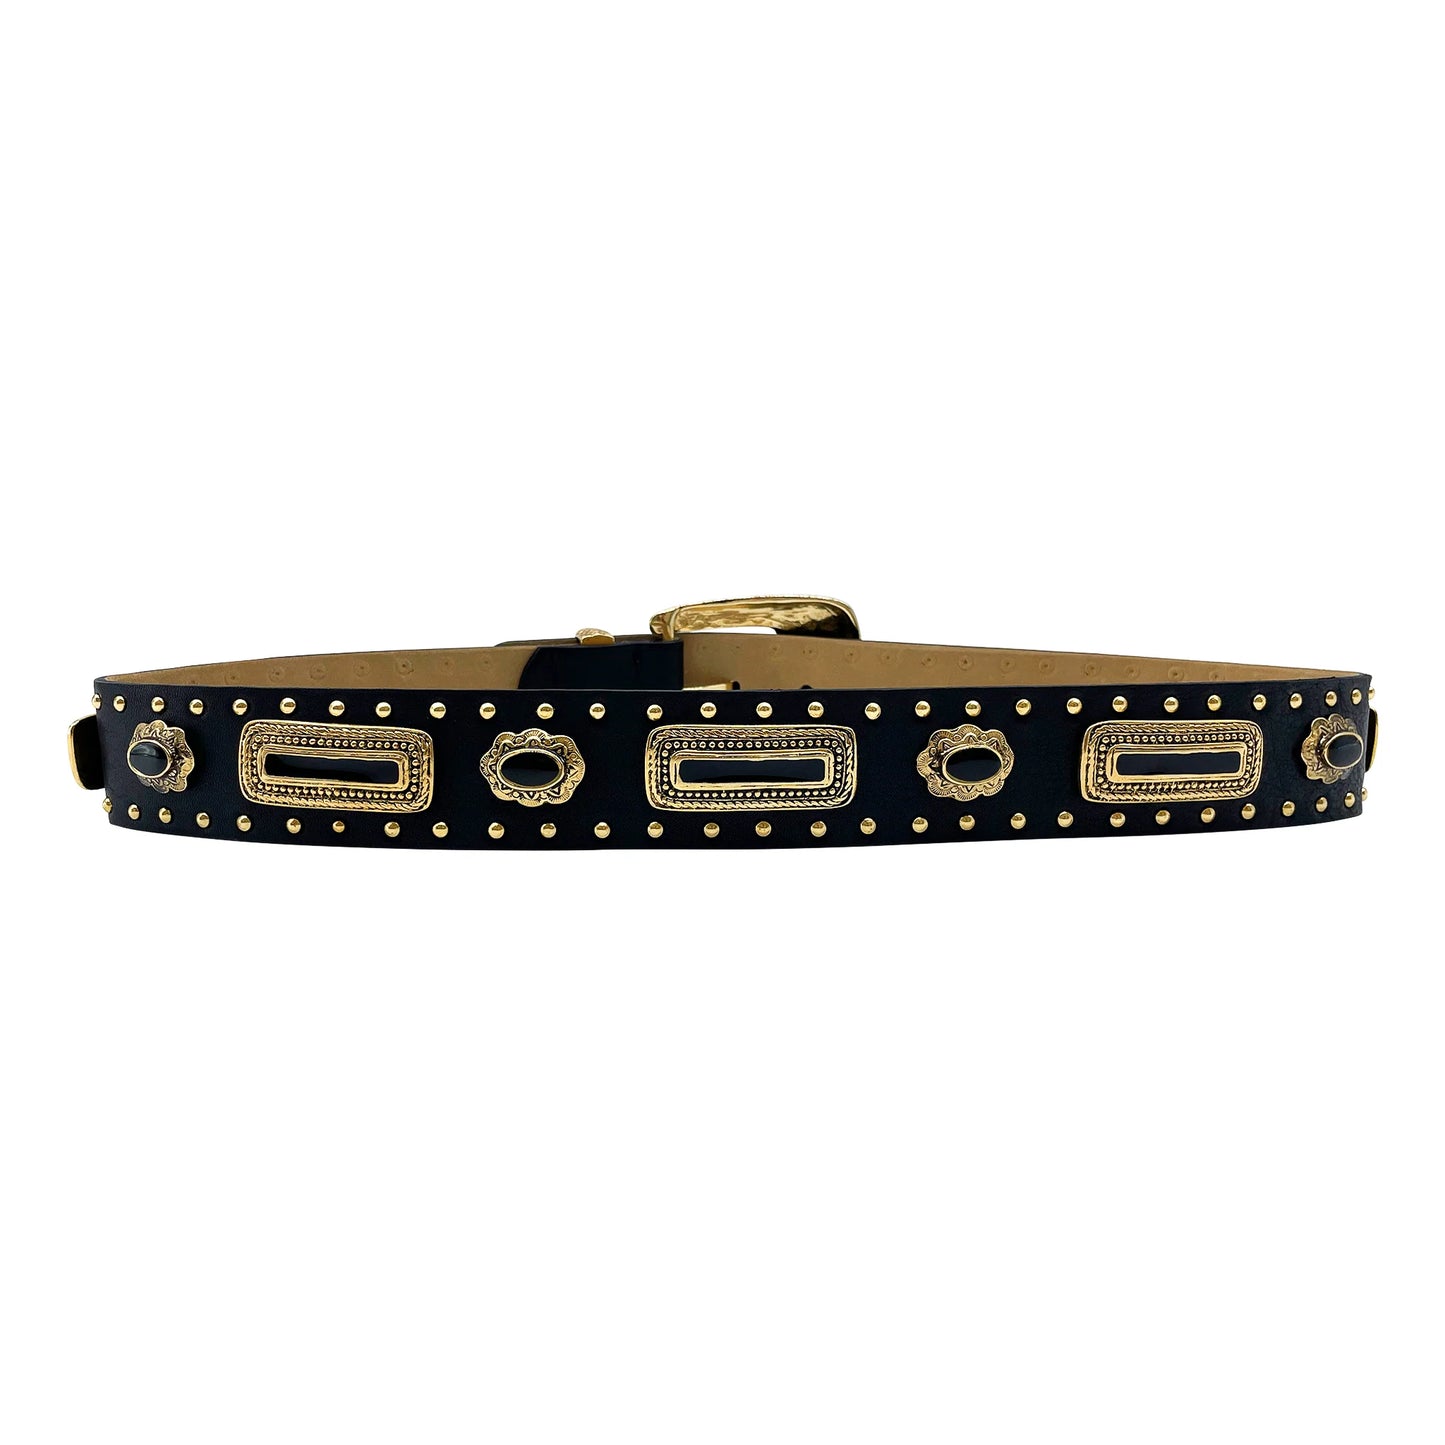 Addison Belt - Vintage Gold Hardware in Black Italian Leather Belt